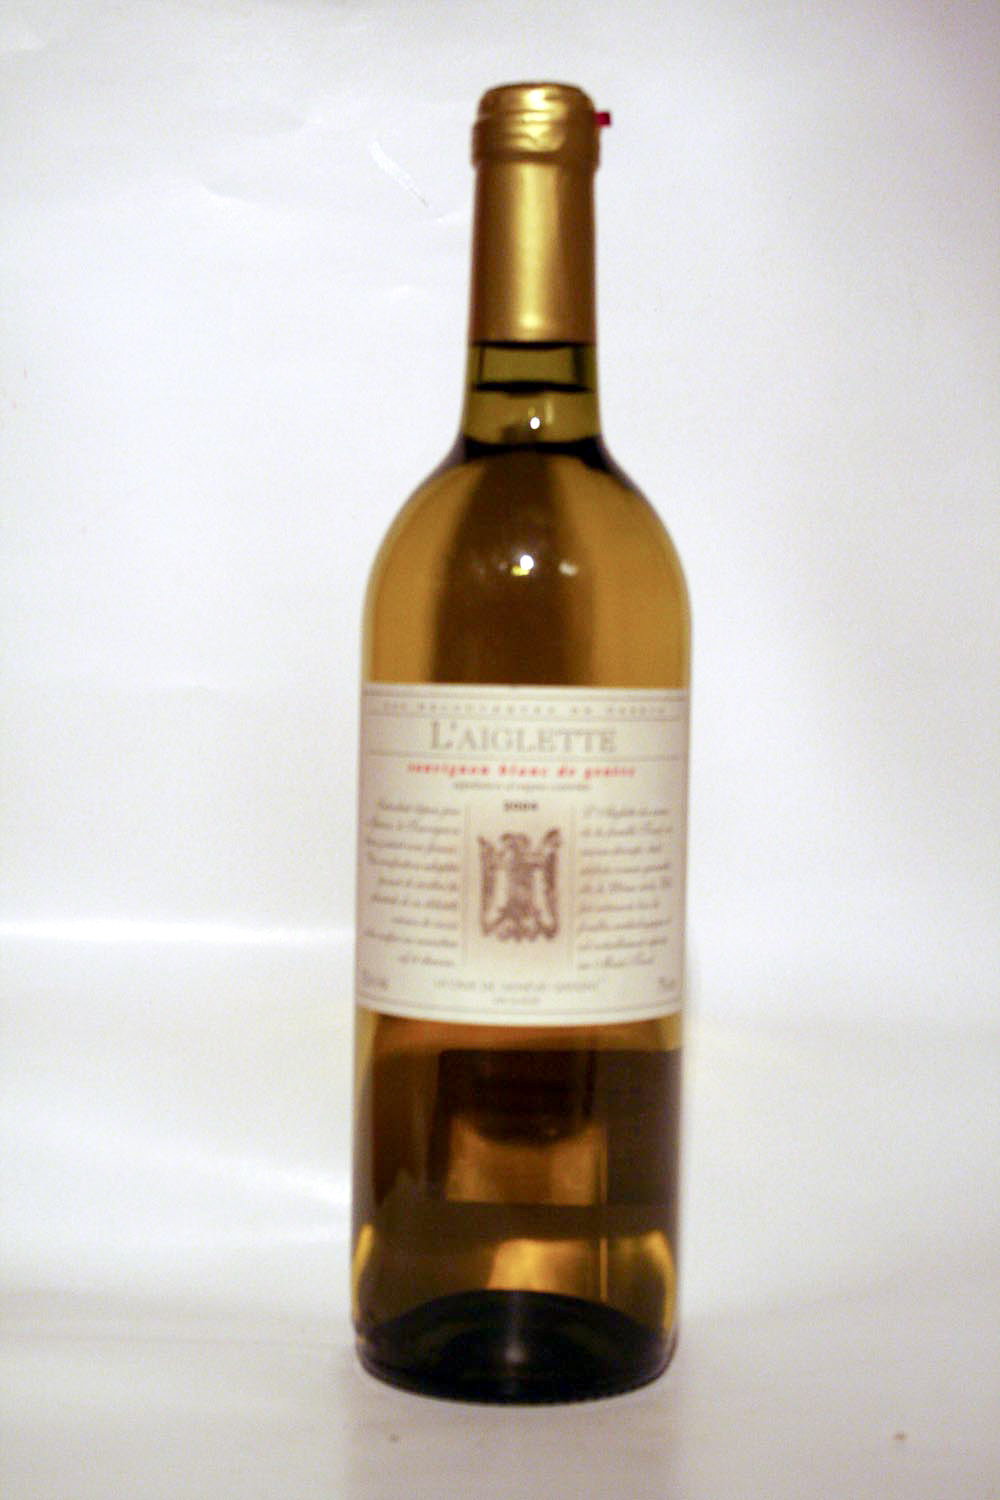 L' Aiglette Sauvignon Blanc 2004